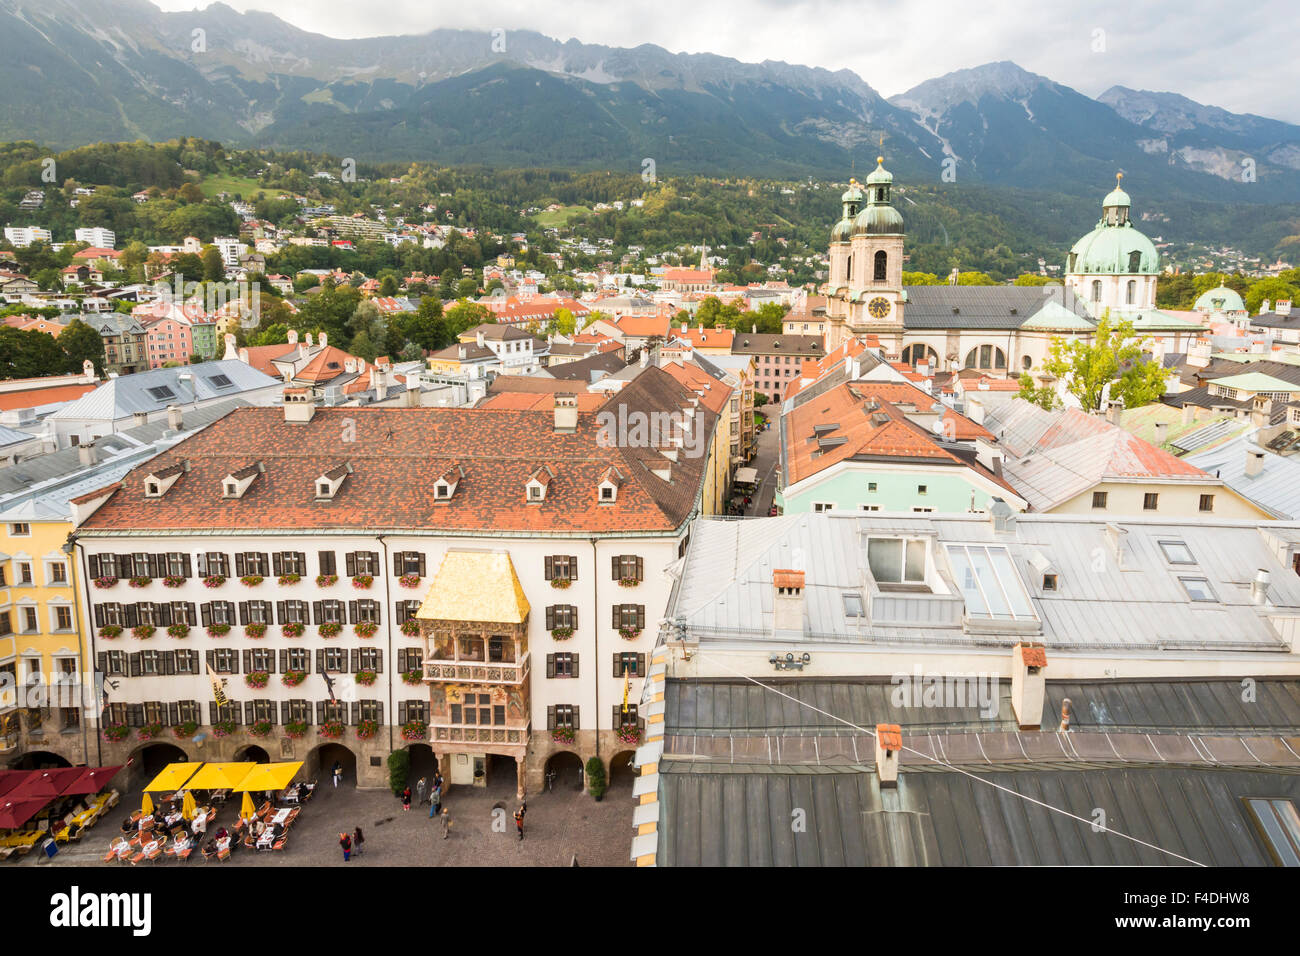 INNSBRUCK, Austria - 22 settembre: vista sulla città di Innsbruck, in Austria il 22 settembre 2015. Foto Stock